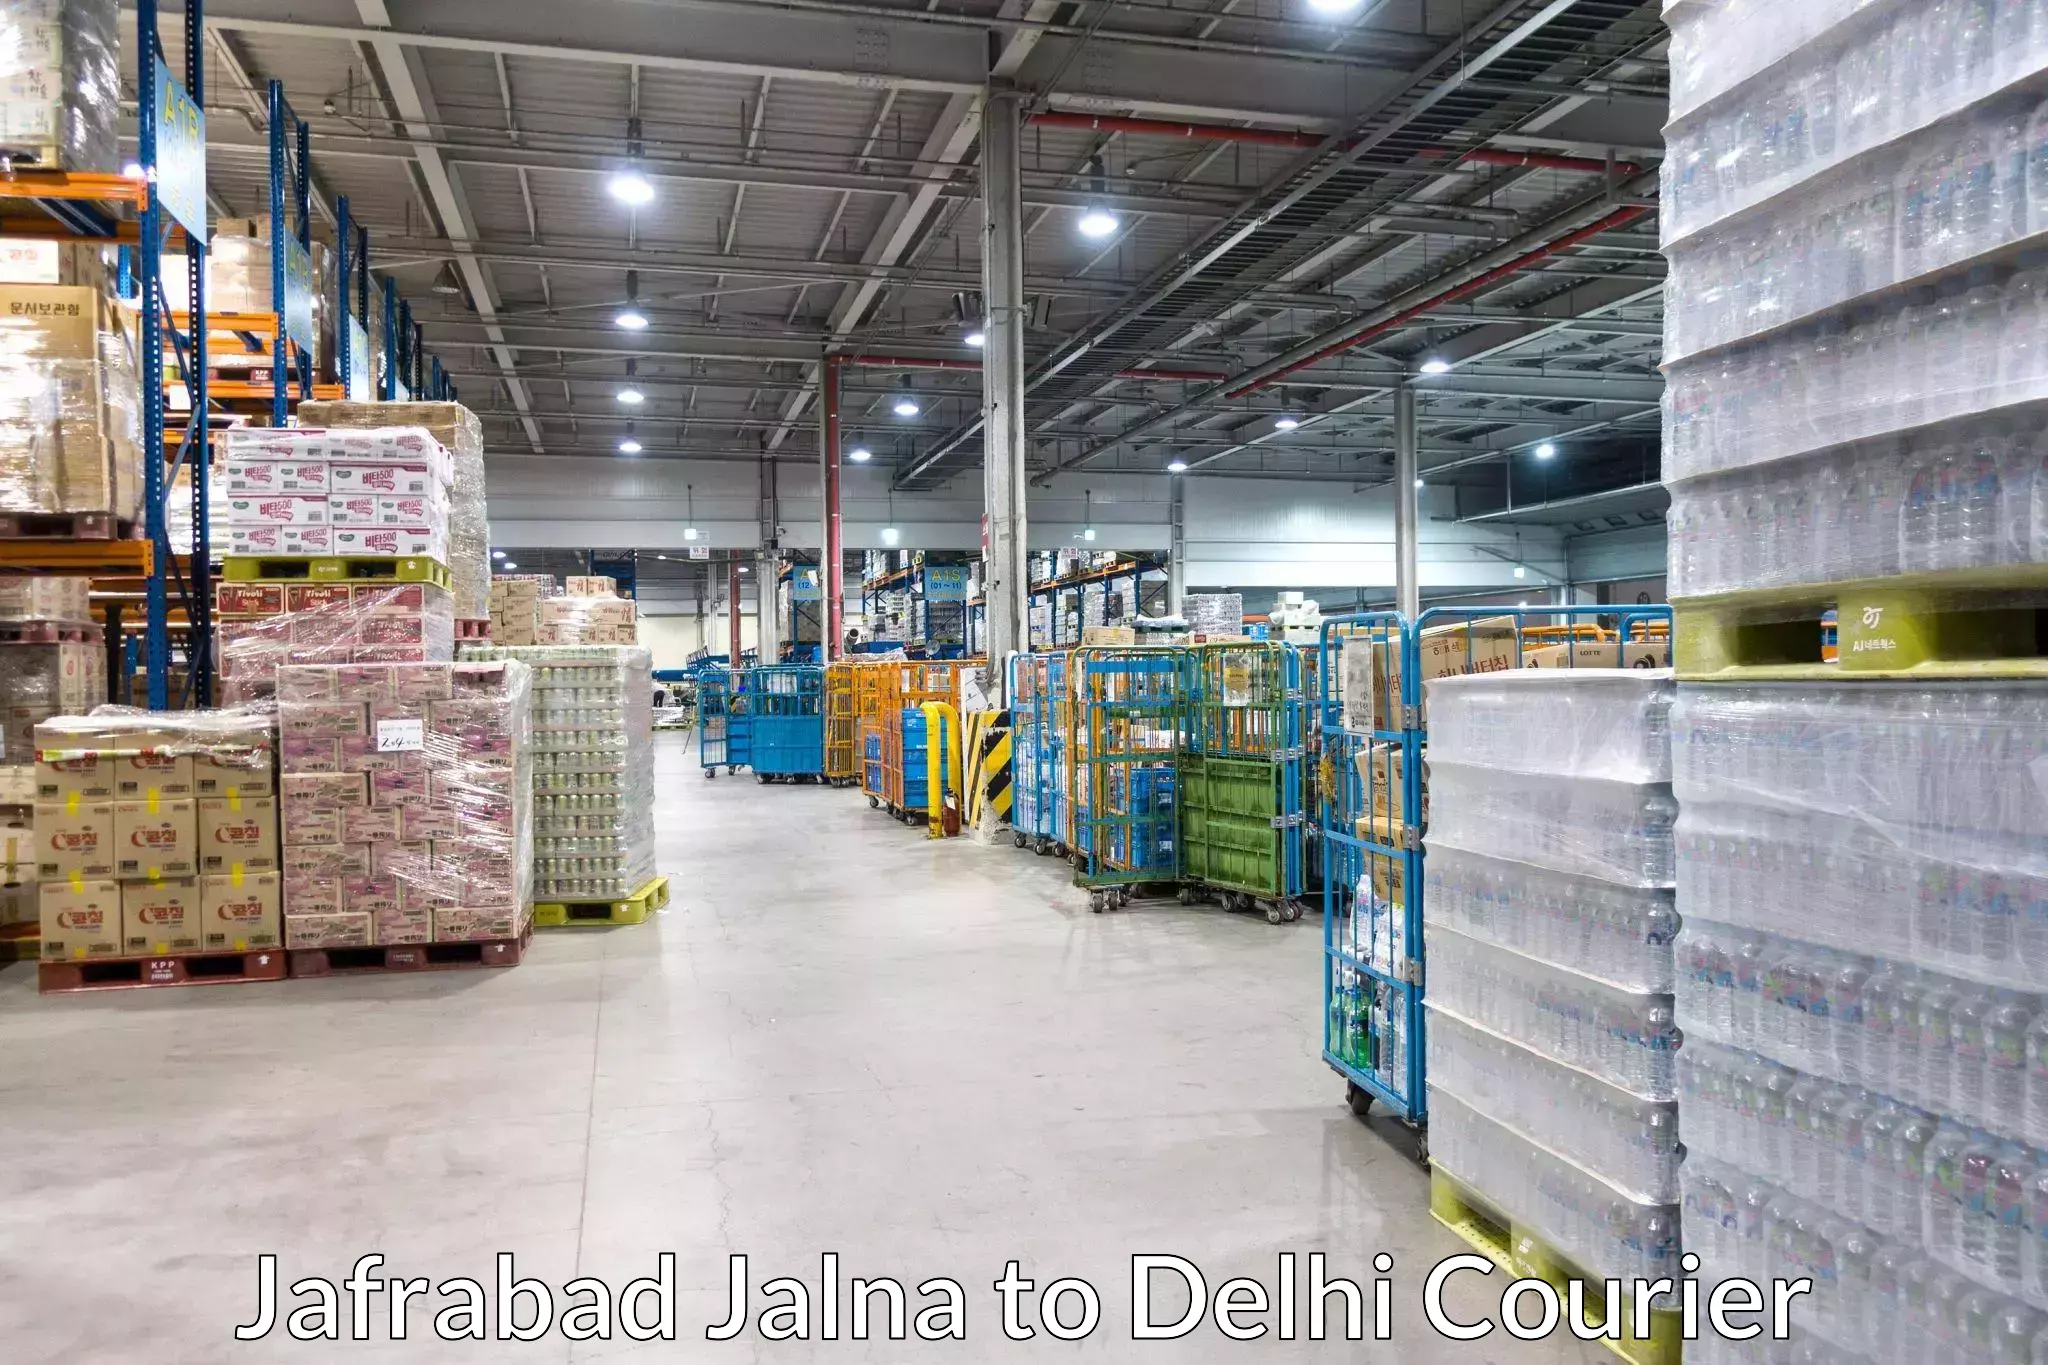 Nationwide courier service Jafrabad Jalna to NIT Delhi